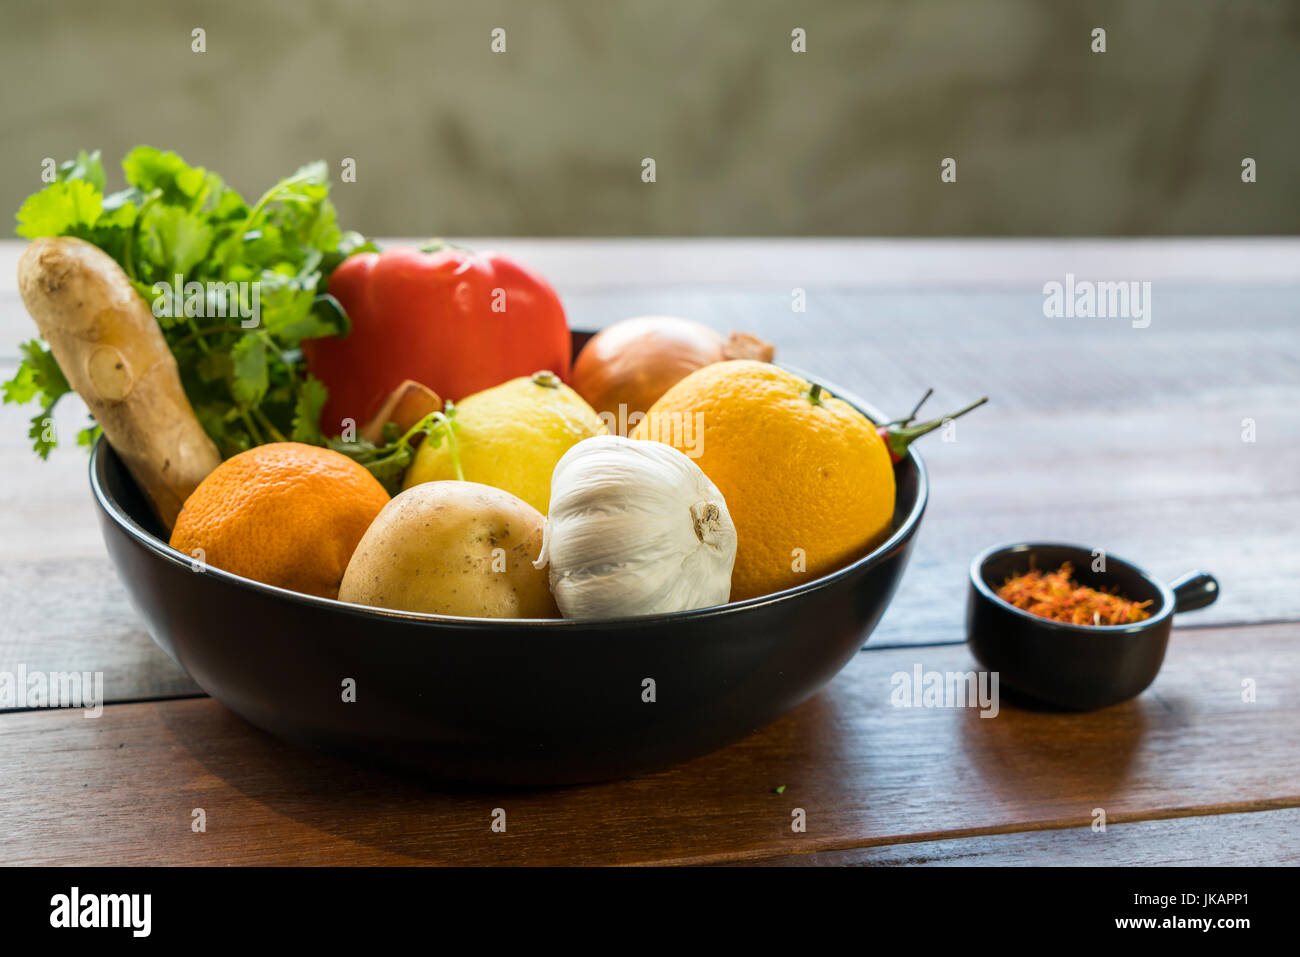 Verdure fresche in un vassoio, le zucchine, la cipolla, arancio, limone, pomodoro, patata Foto Stock